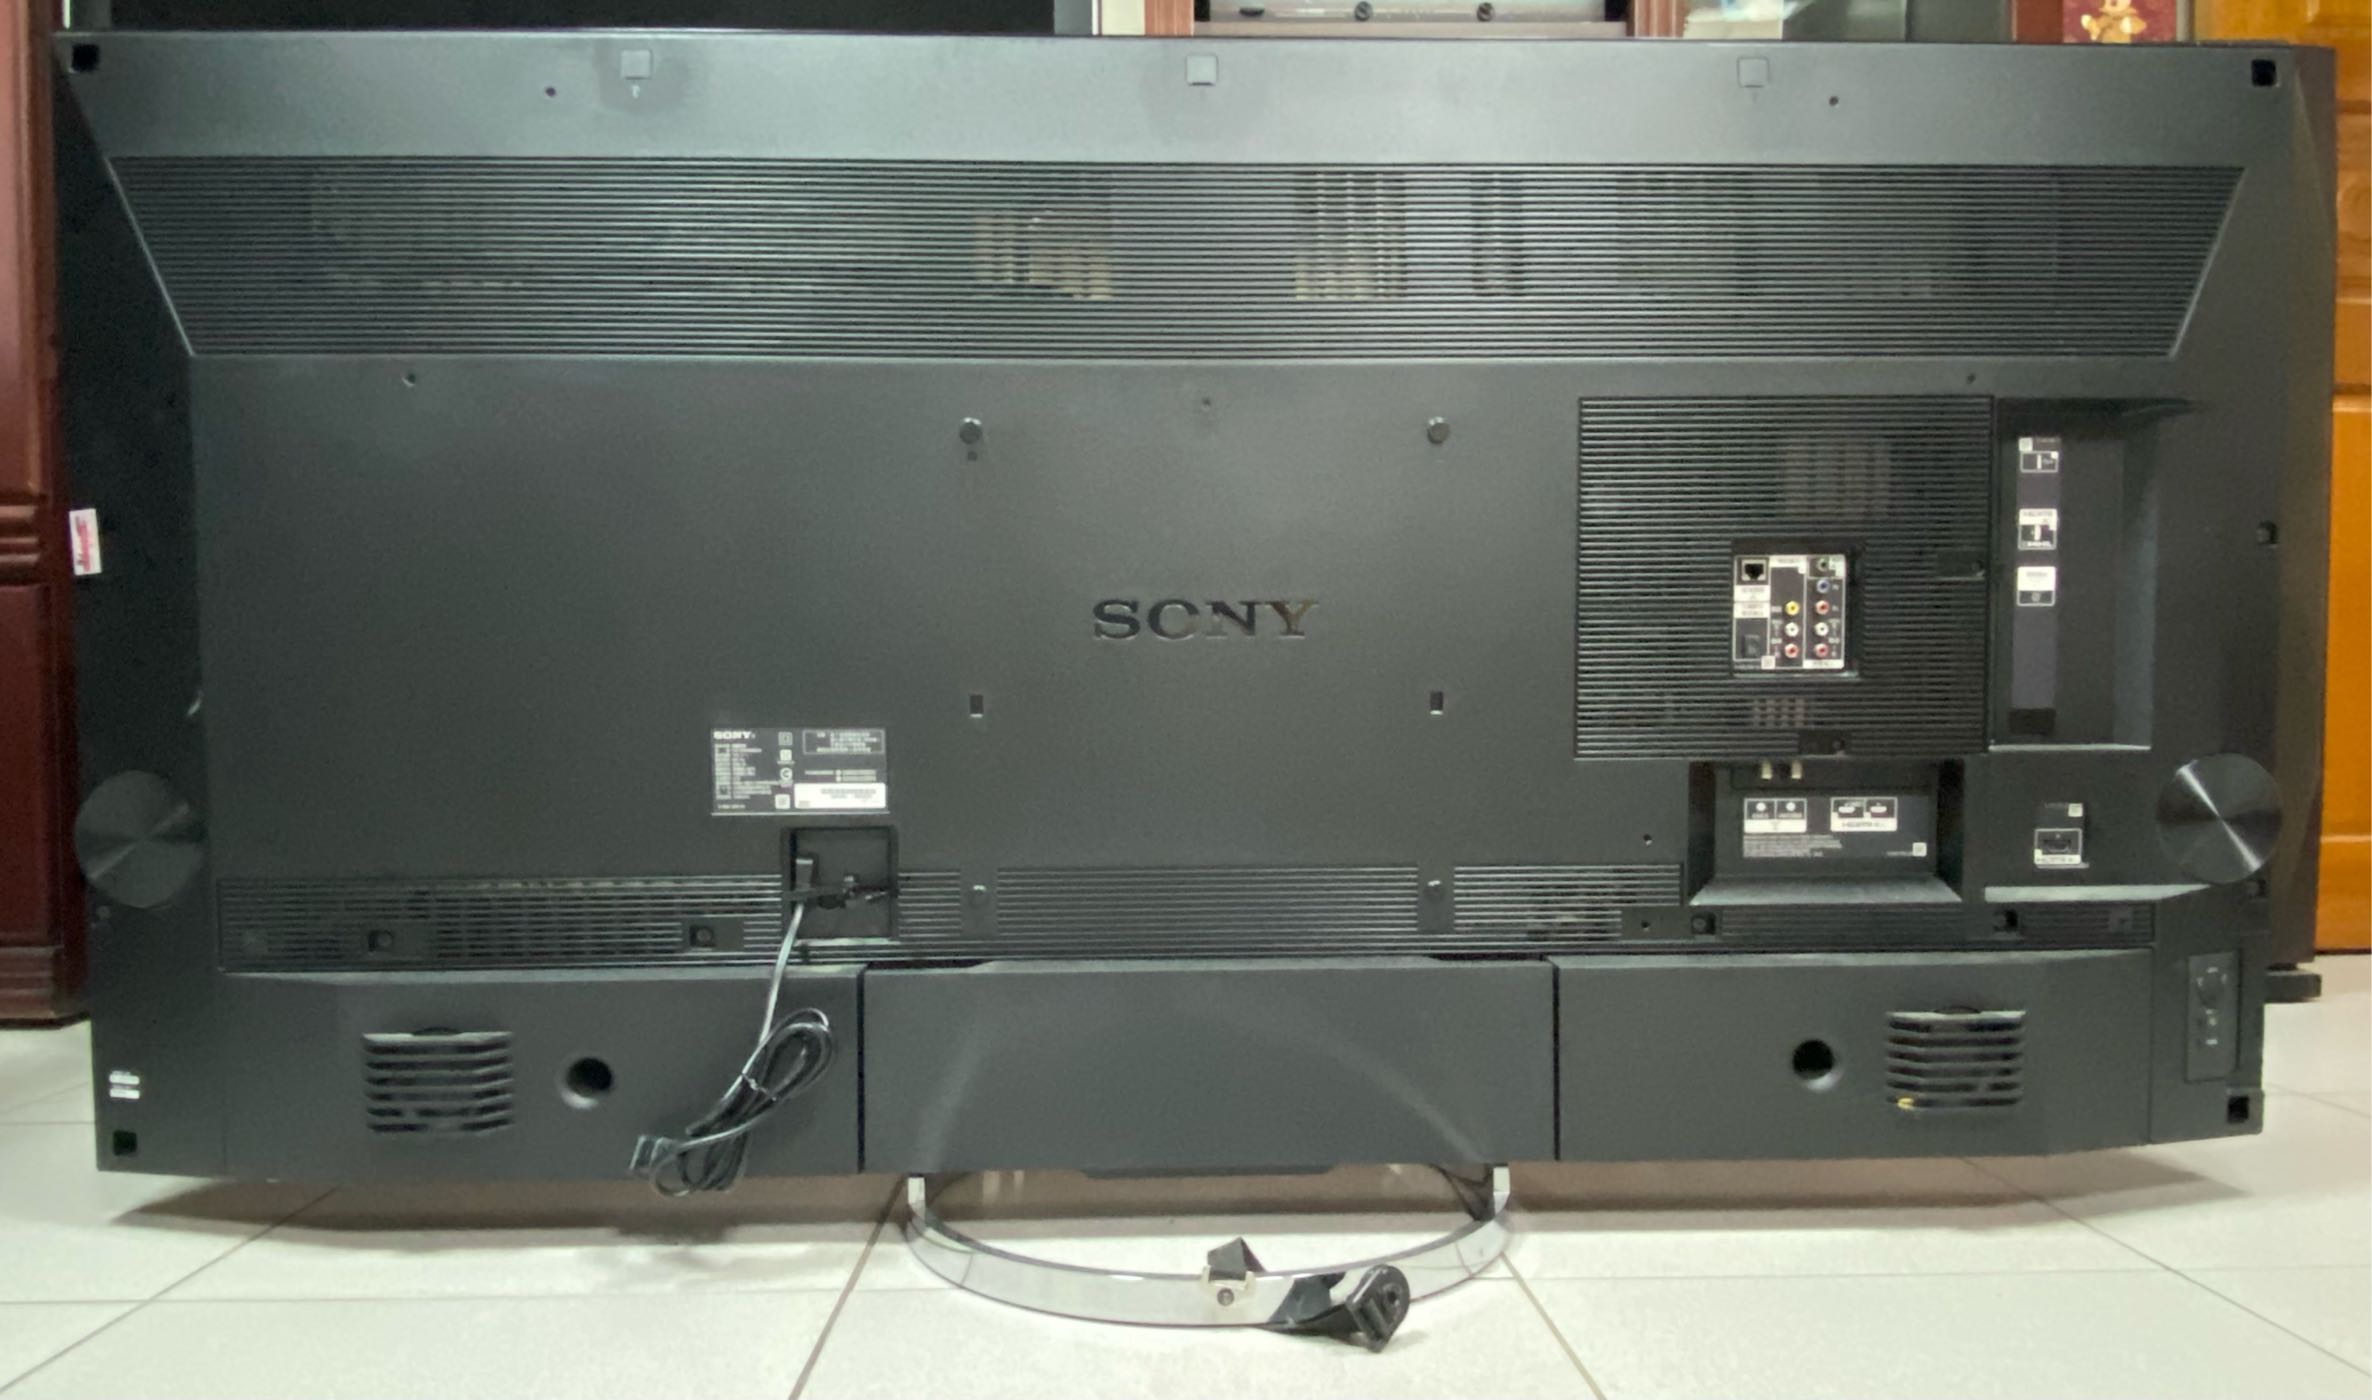 Sony Bravia LED TV 55吋 4K高階電視 KD-55X9000A 日本製